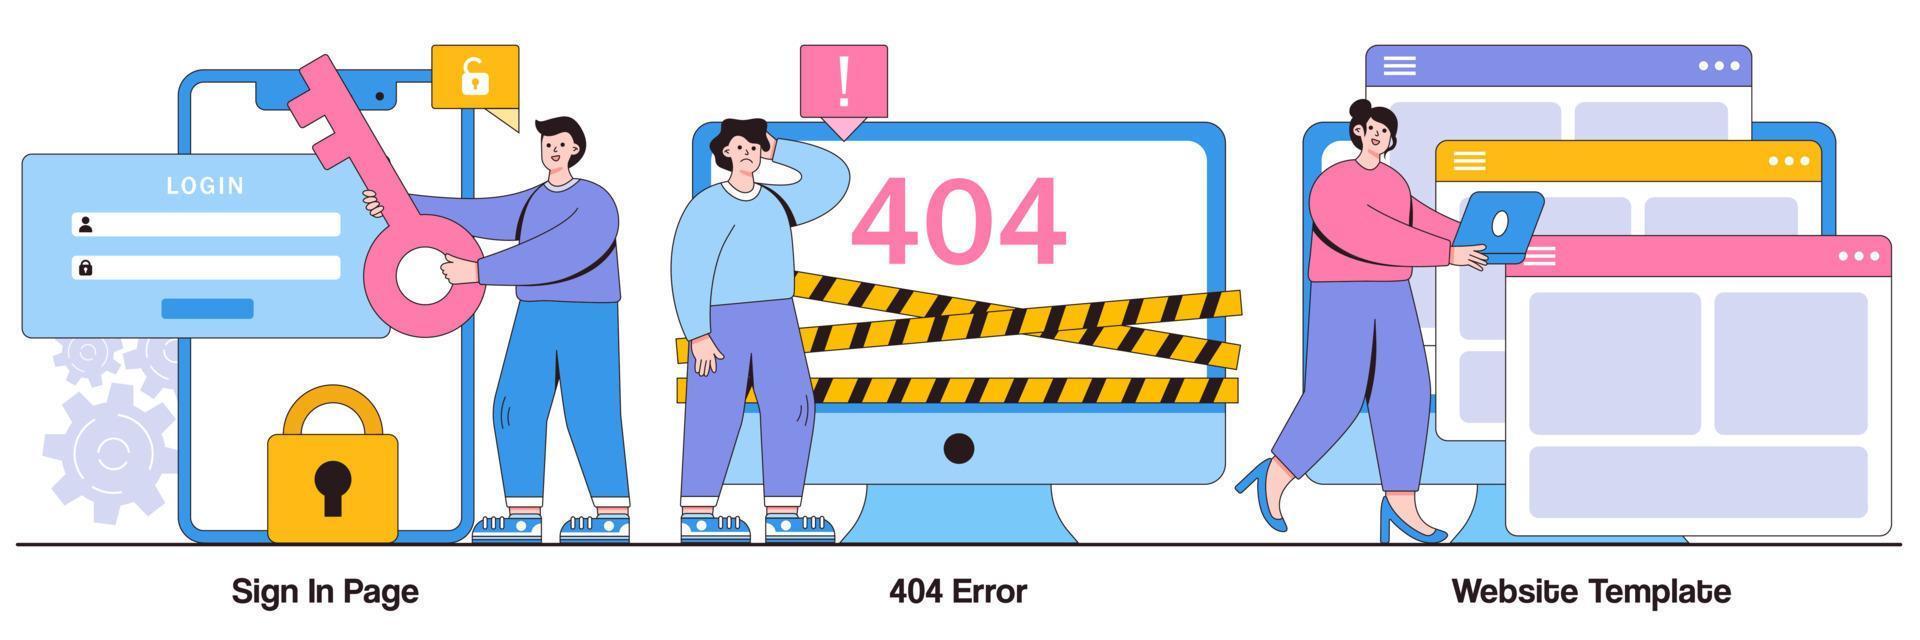 pagina di accesso, errore 404, concetto di modello di sito Web con carattere di persone. insieme dell'illustrazione di vettore dell'interfaccia della pagina del sito Web. modulo di accesso utente, interfaccia utente, registrazione nuovo account, pagina di destinazione, web design